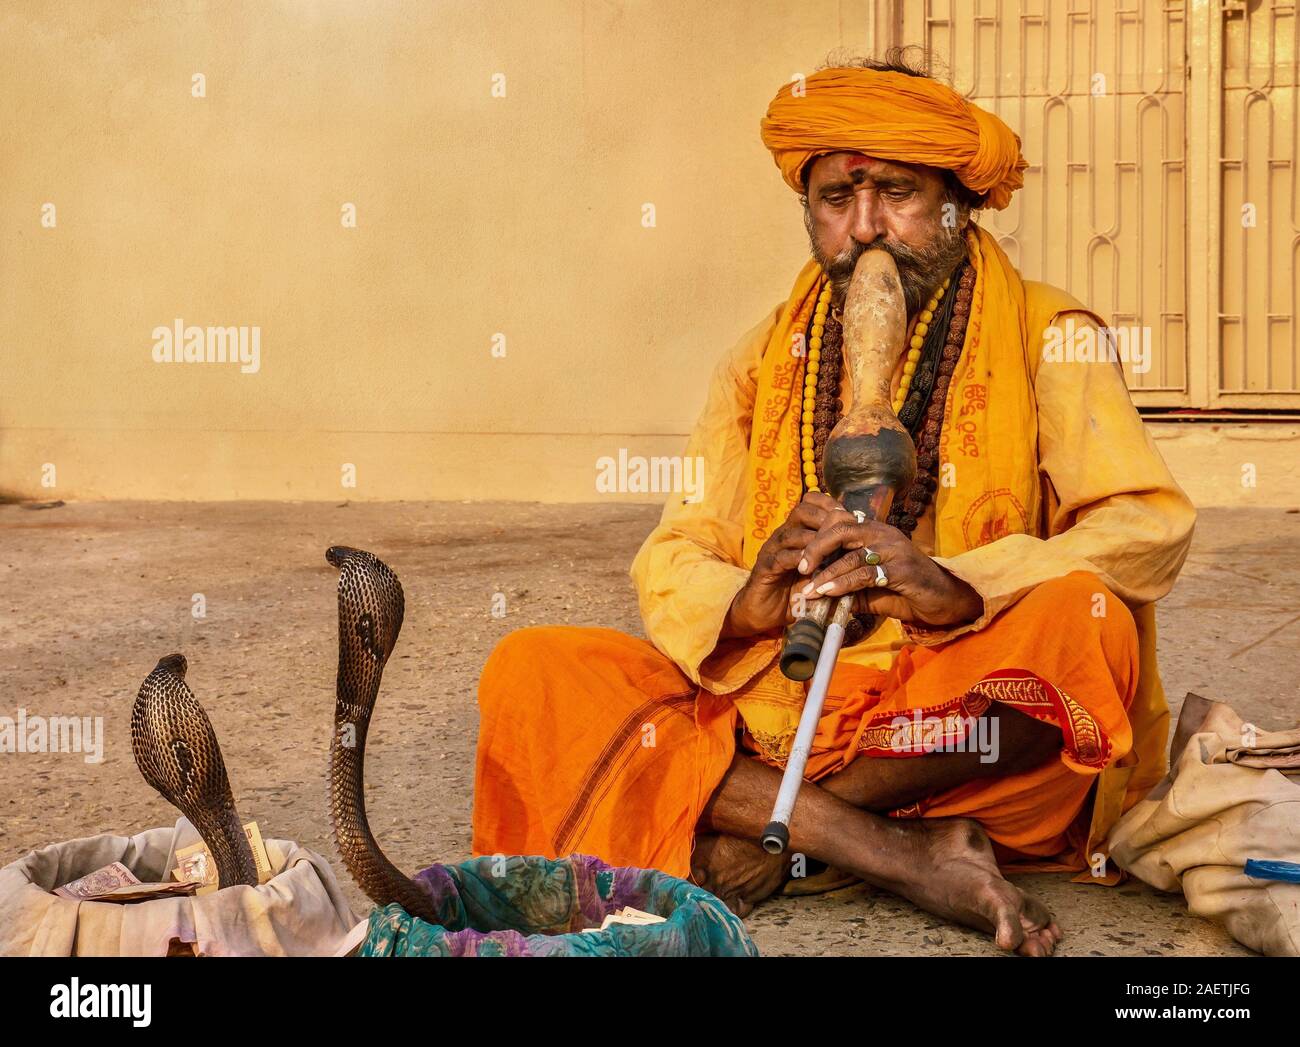 Un Indien charmeur de serpent joue un instrument de musique traditionnel appelé un pungi, hypnose deux serpents king cobra dans un ancien rituel culturel. Banque D'Images